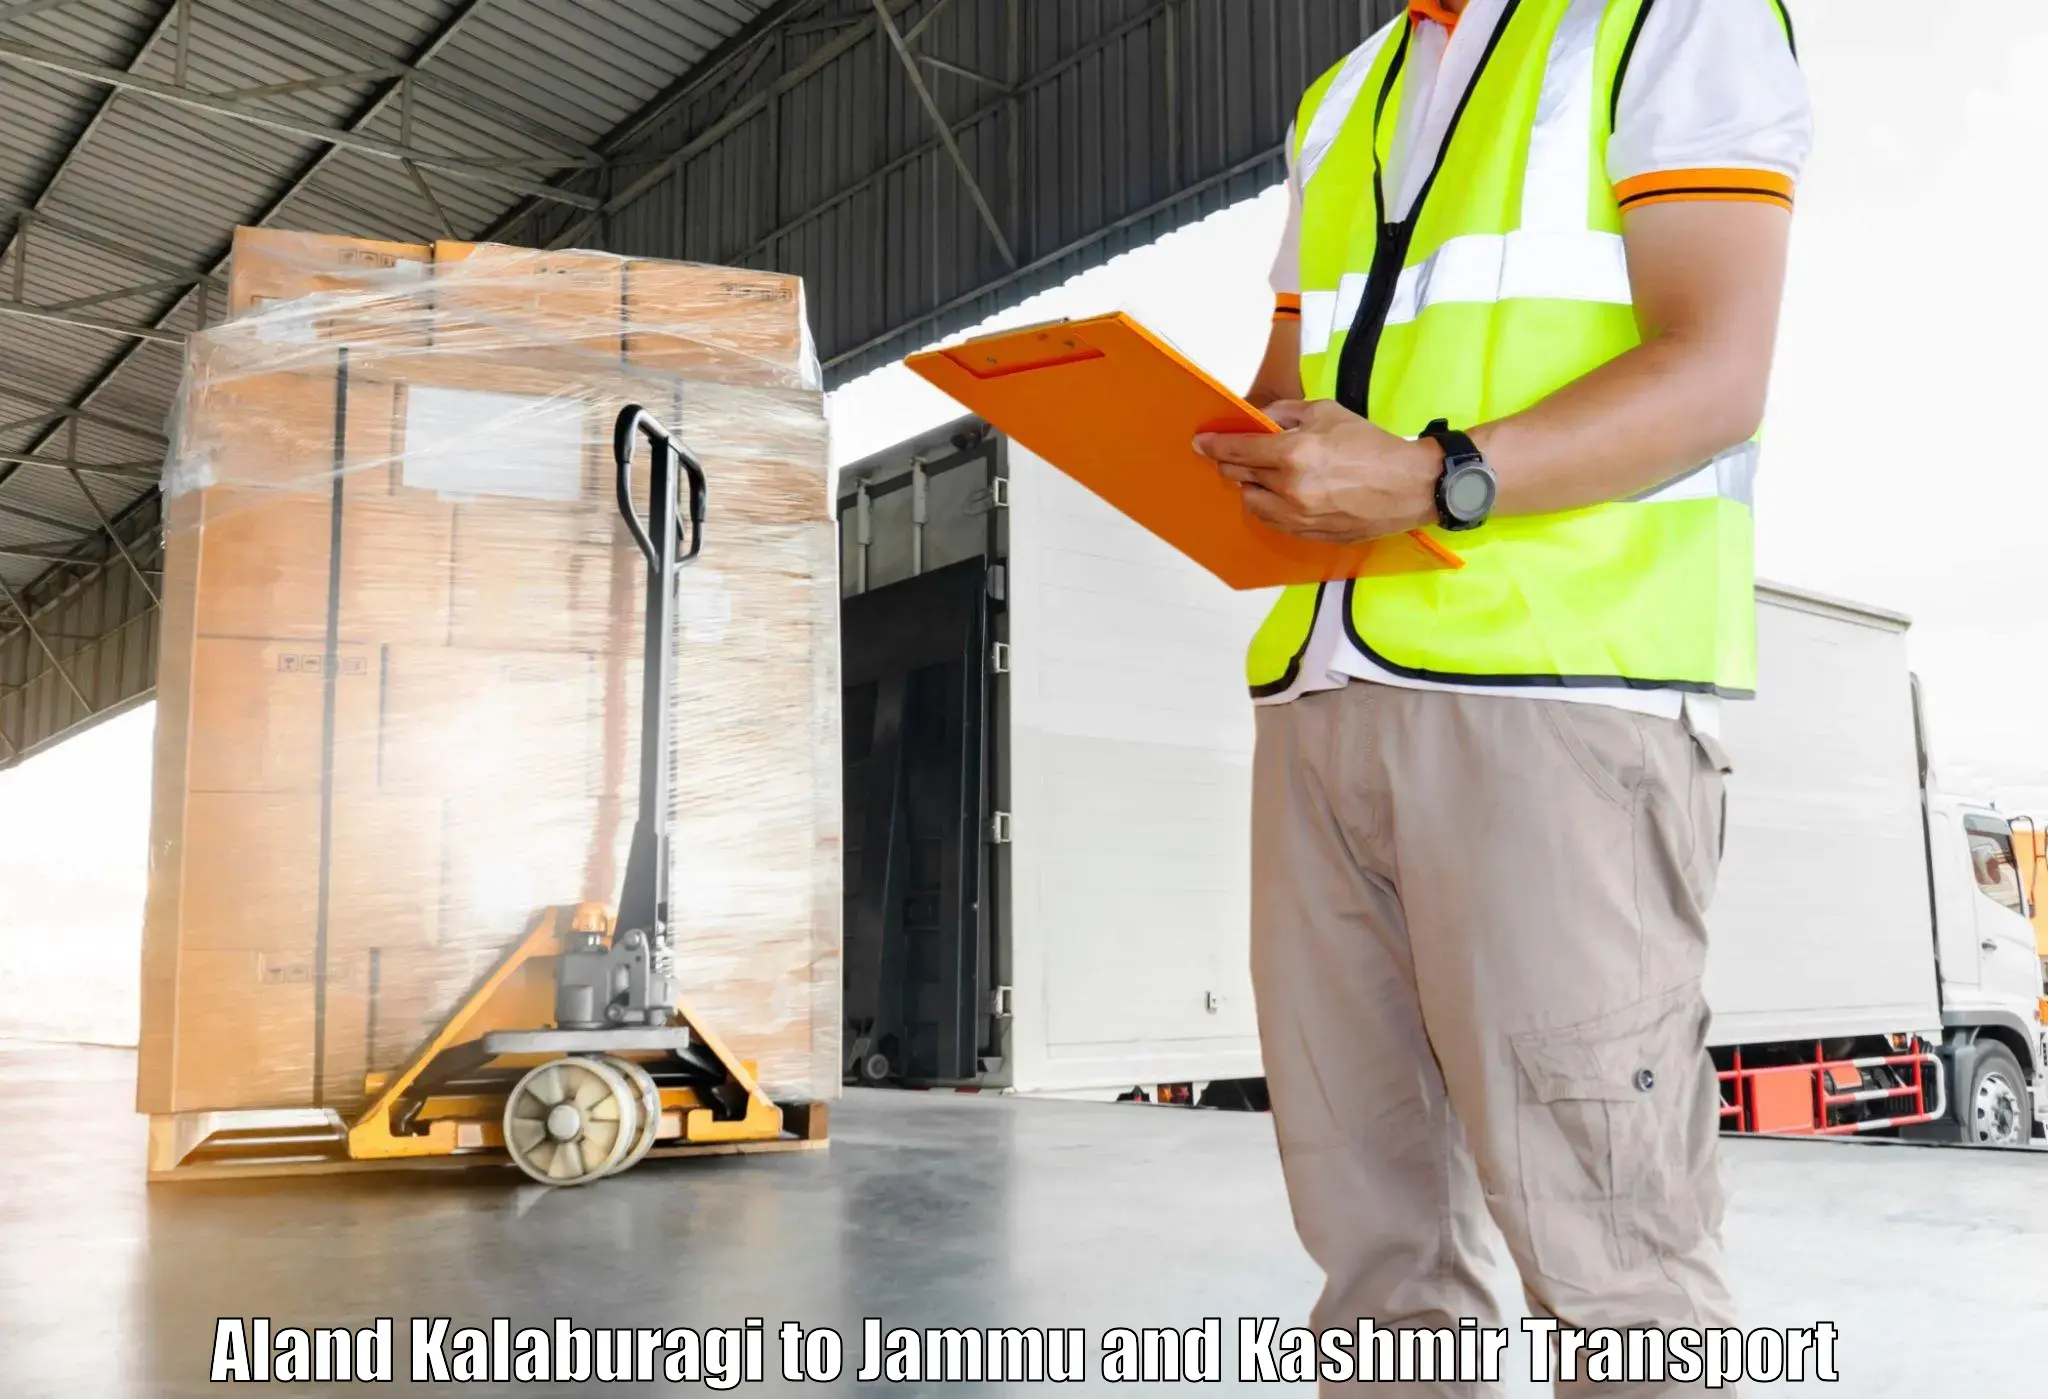 Luggage transport services Aland Kalaburagi to Kulgam